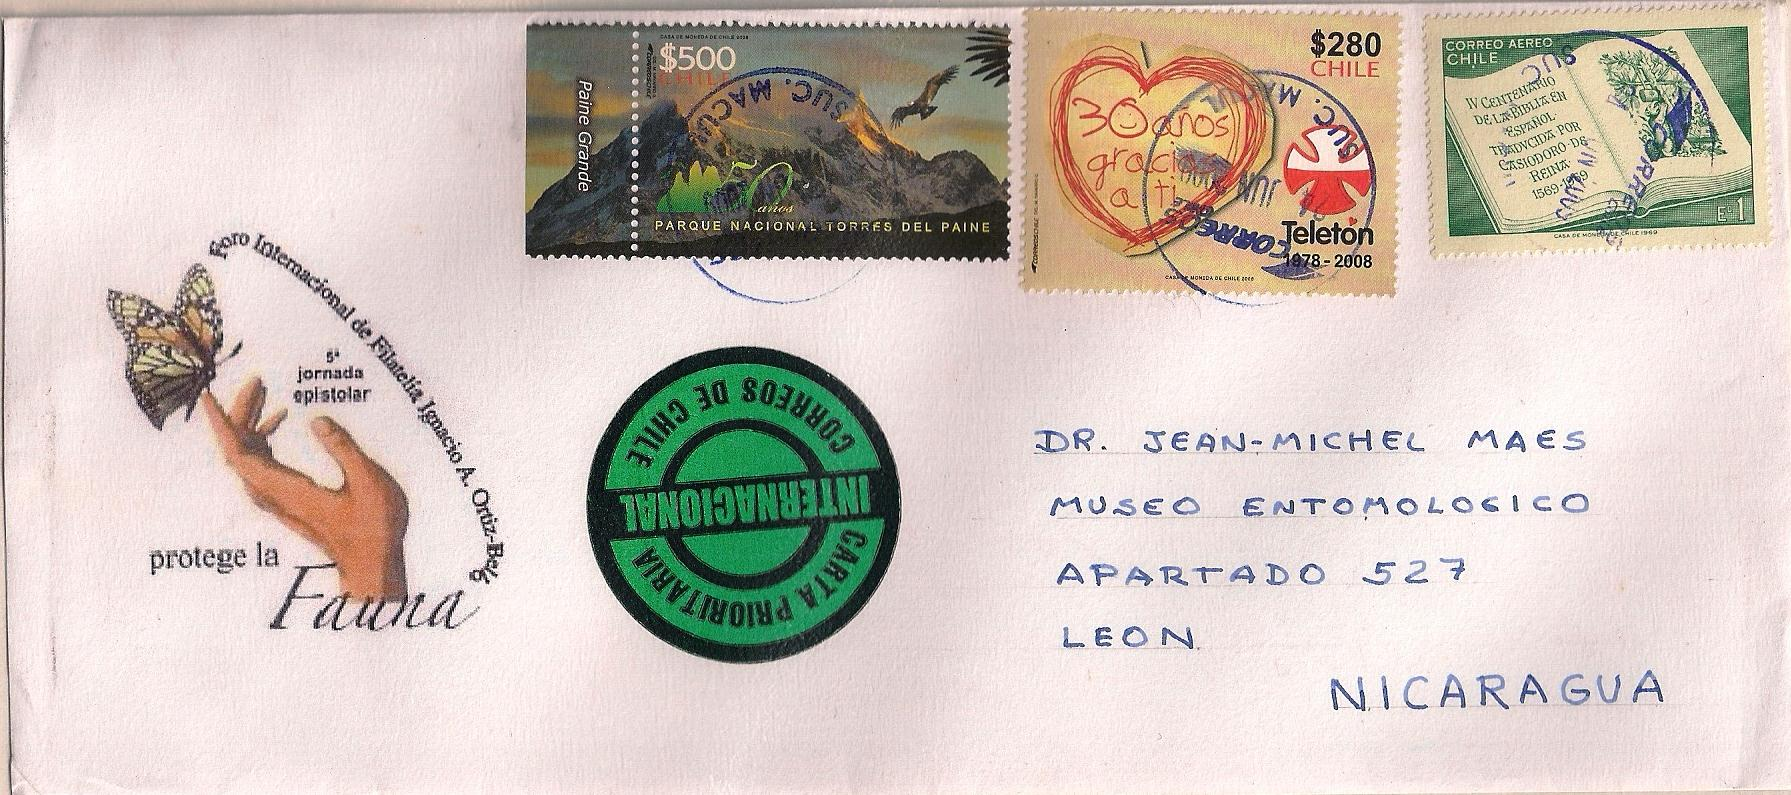 2009 Junio 24 : 400 Aniversario de la traducción de la Biblia al español 1969 (Scott : 380, C 295), sobre carta con logo de mariposa, enviada de Santiago a León, Nicaragua (30-VI-2009), con sellos